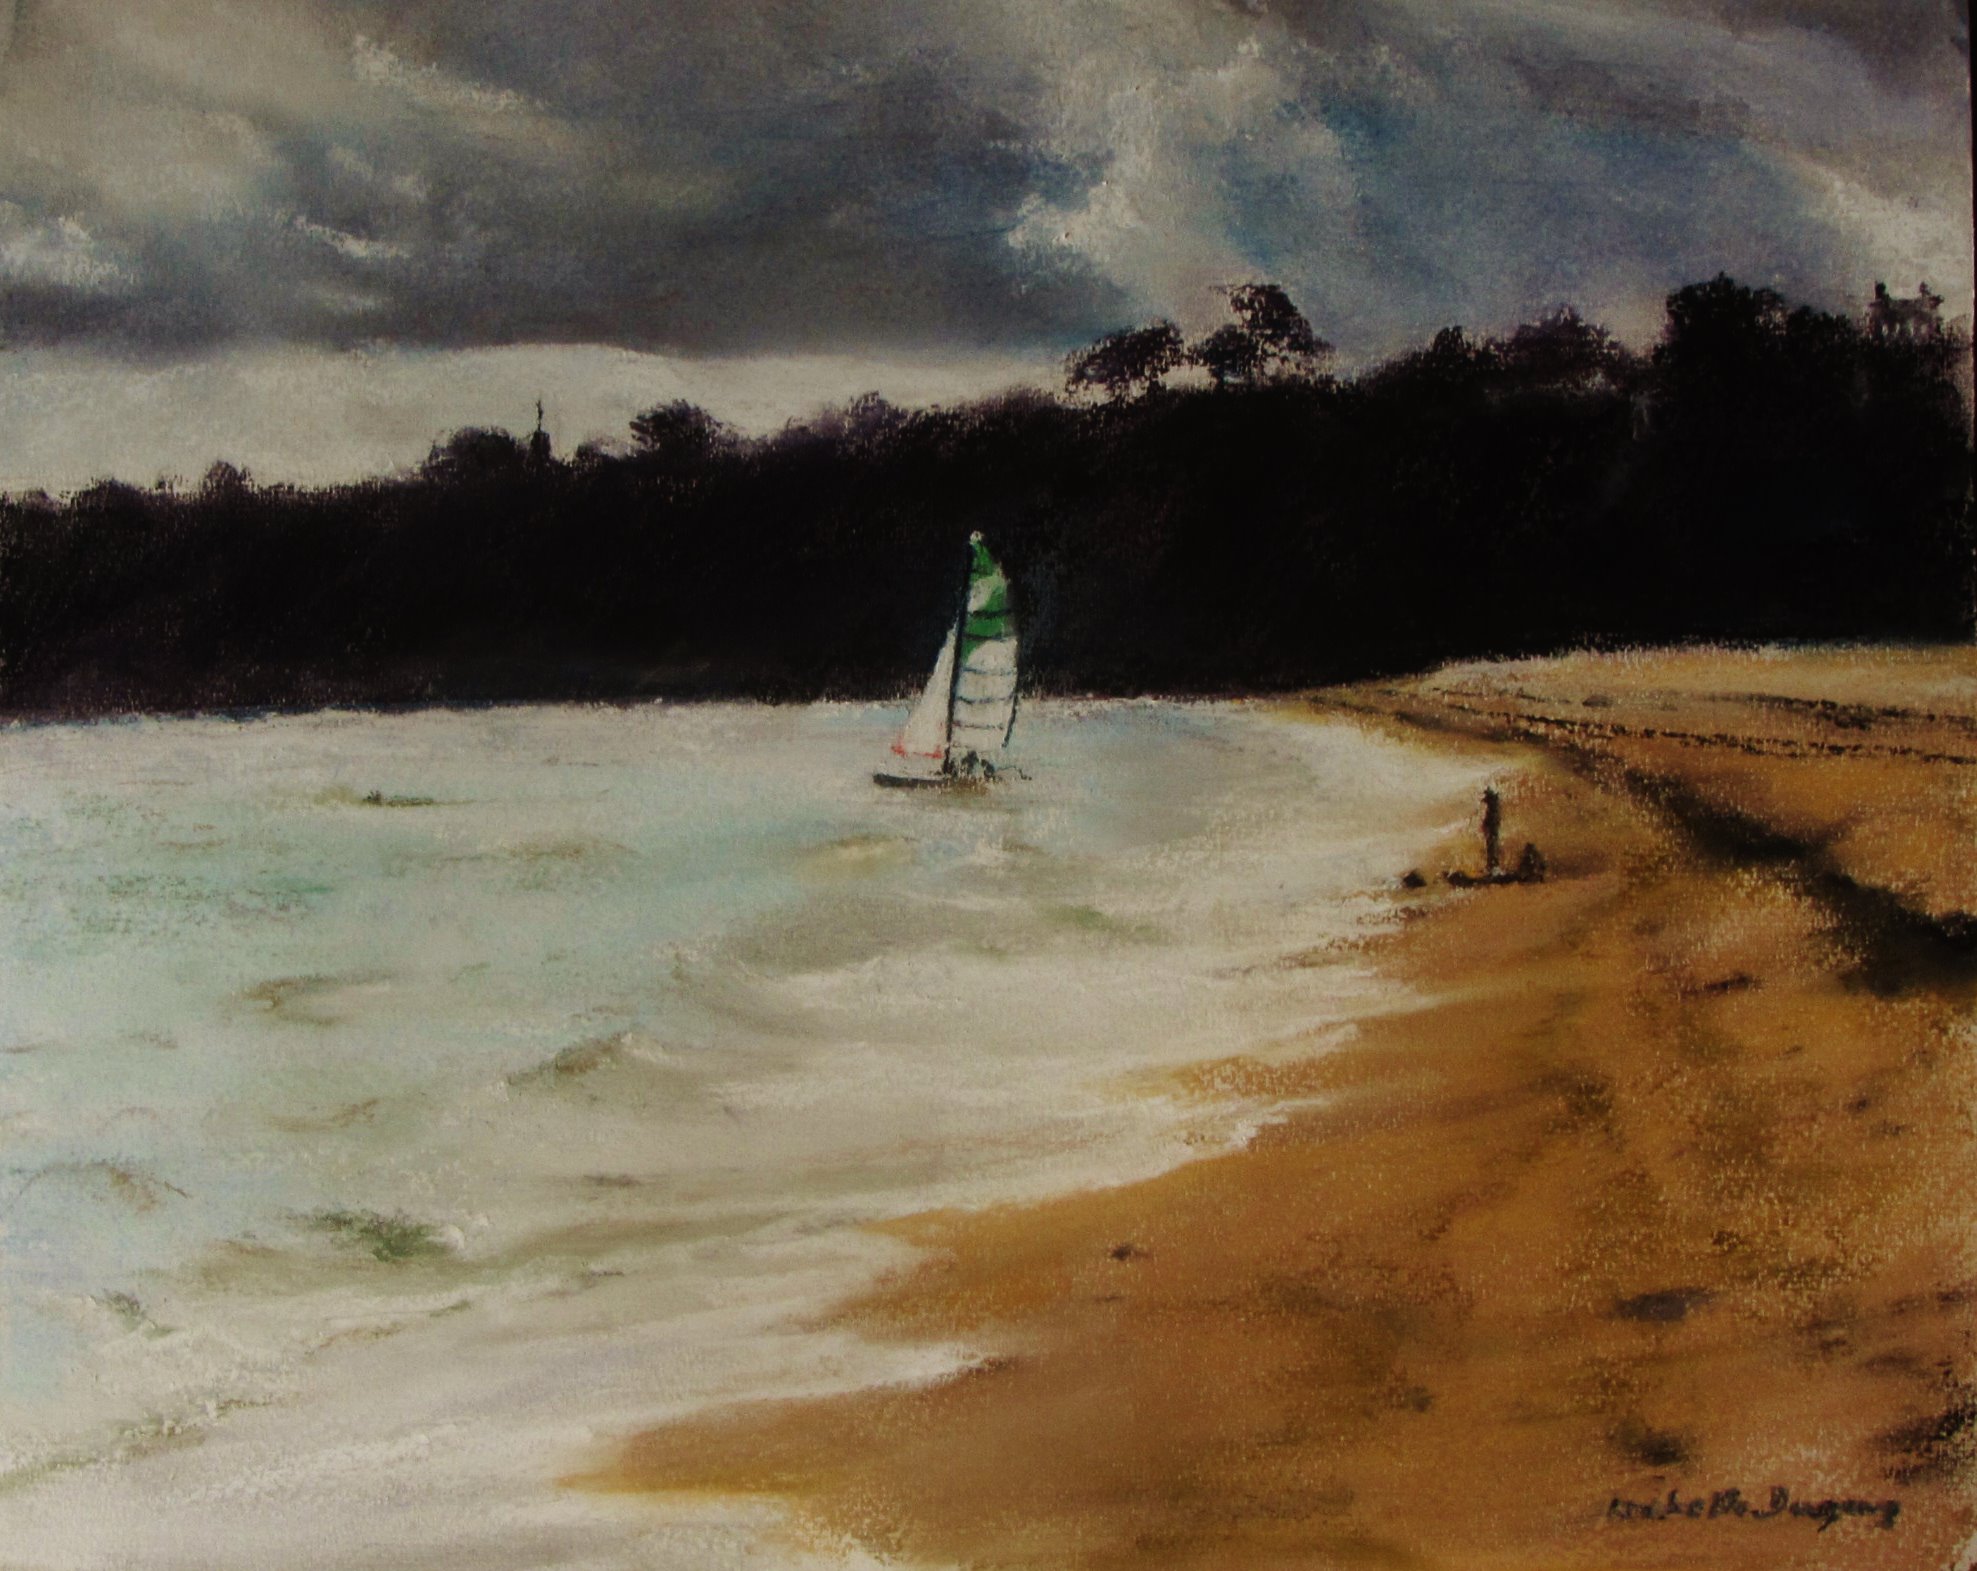 Ambiance de voile sur la plage de Saint-Cast-Le-Guildo - Peinture au pastel sec par l'artiste peintre Isabelle Douzamy - 66 x 50.5 cm (encadré)